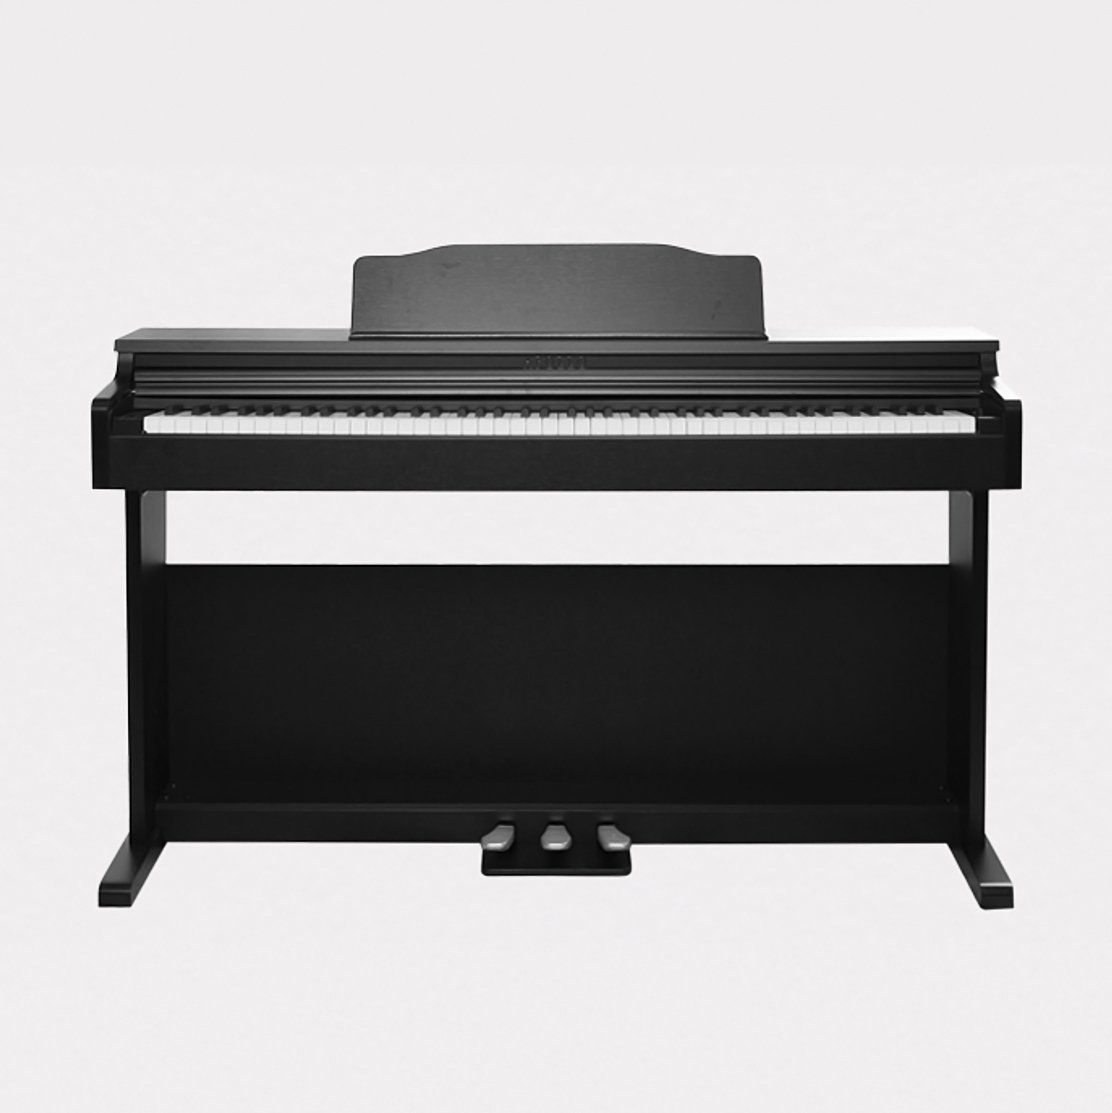  PIANO APOLLO DP-66 